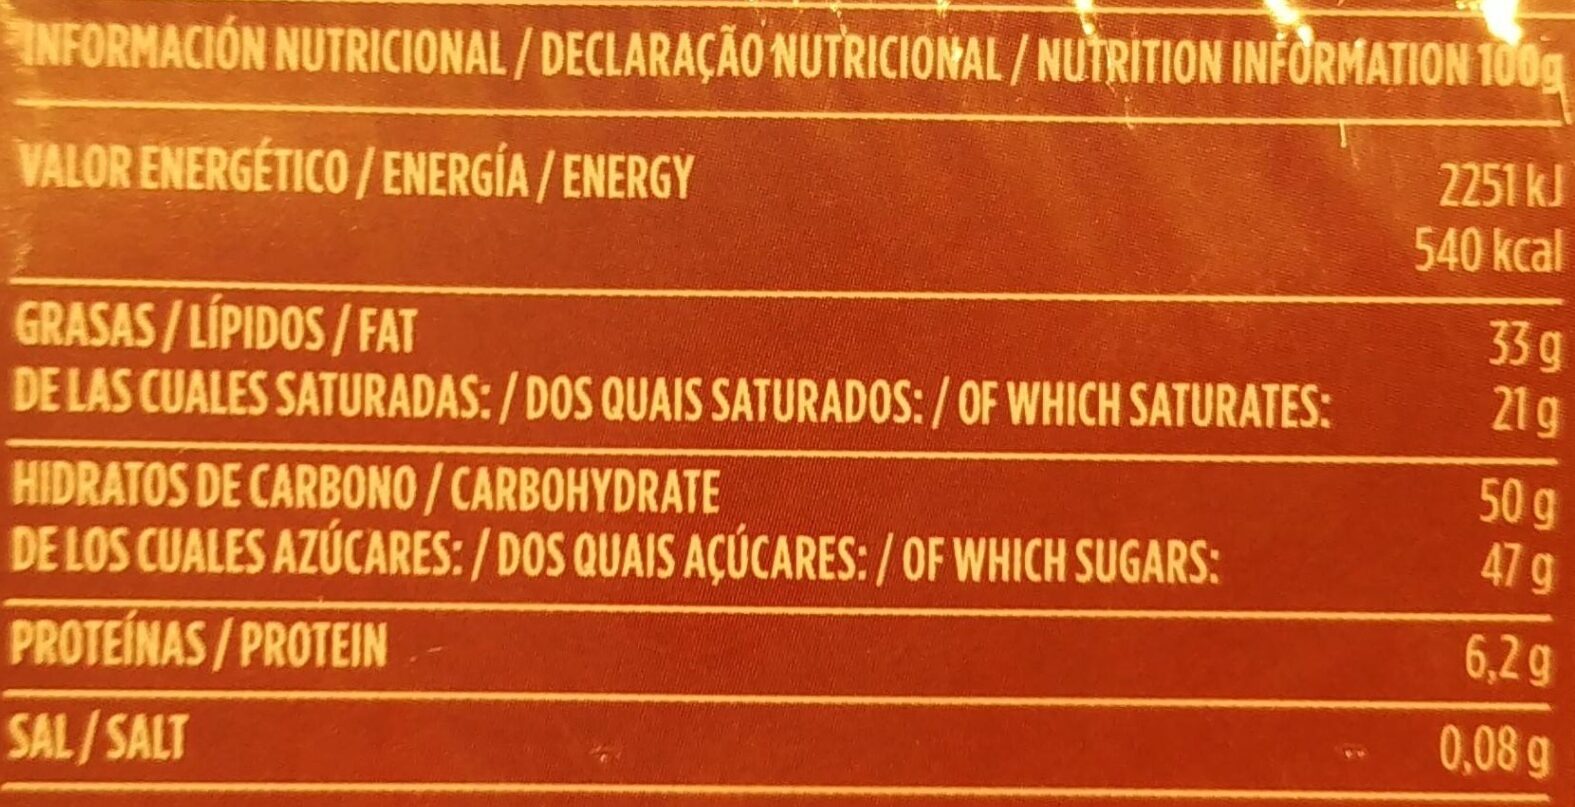 Chocolate Puro - Informació nutricional - es